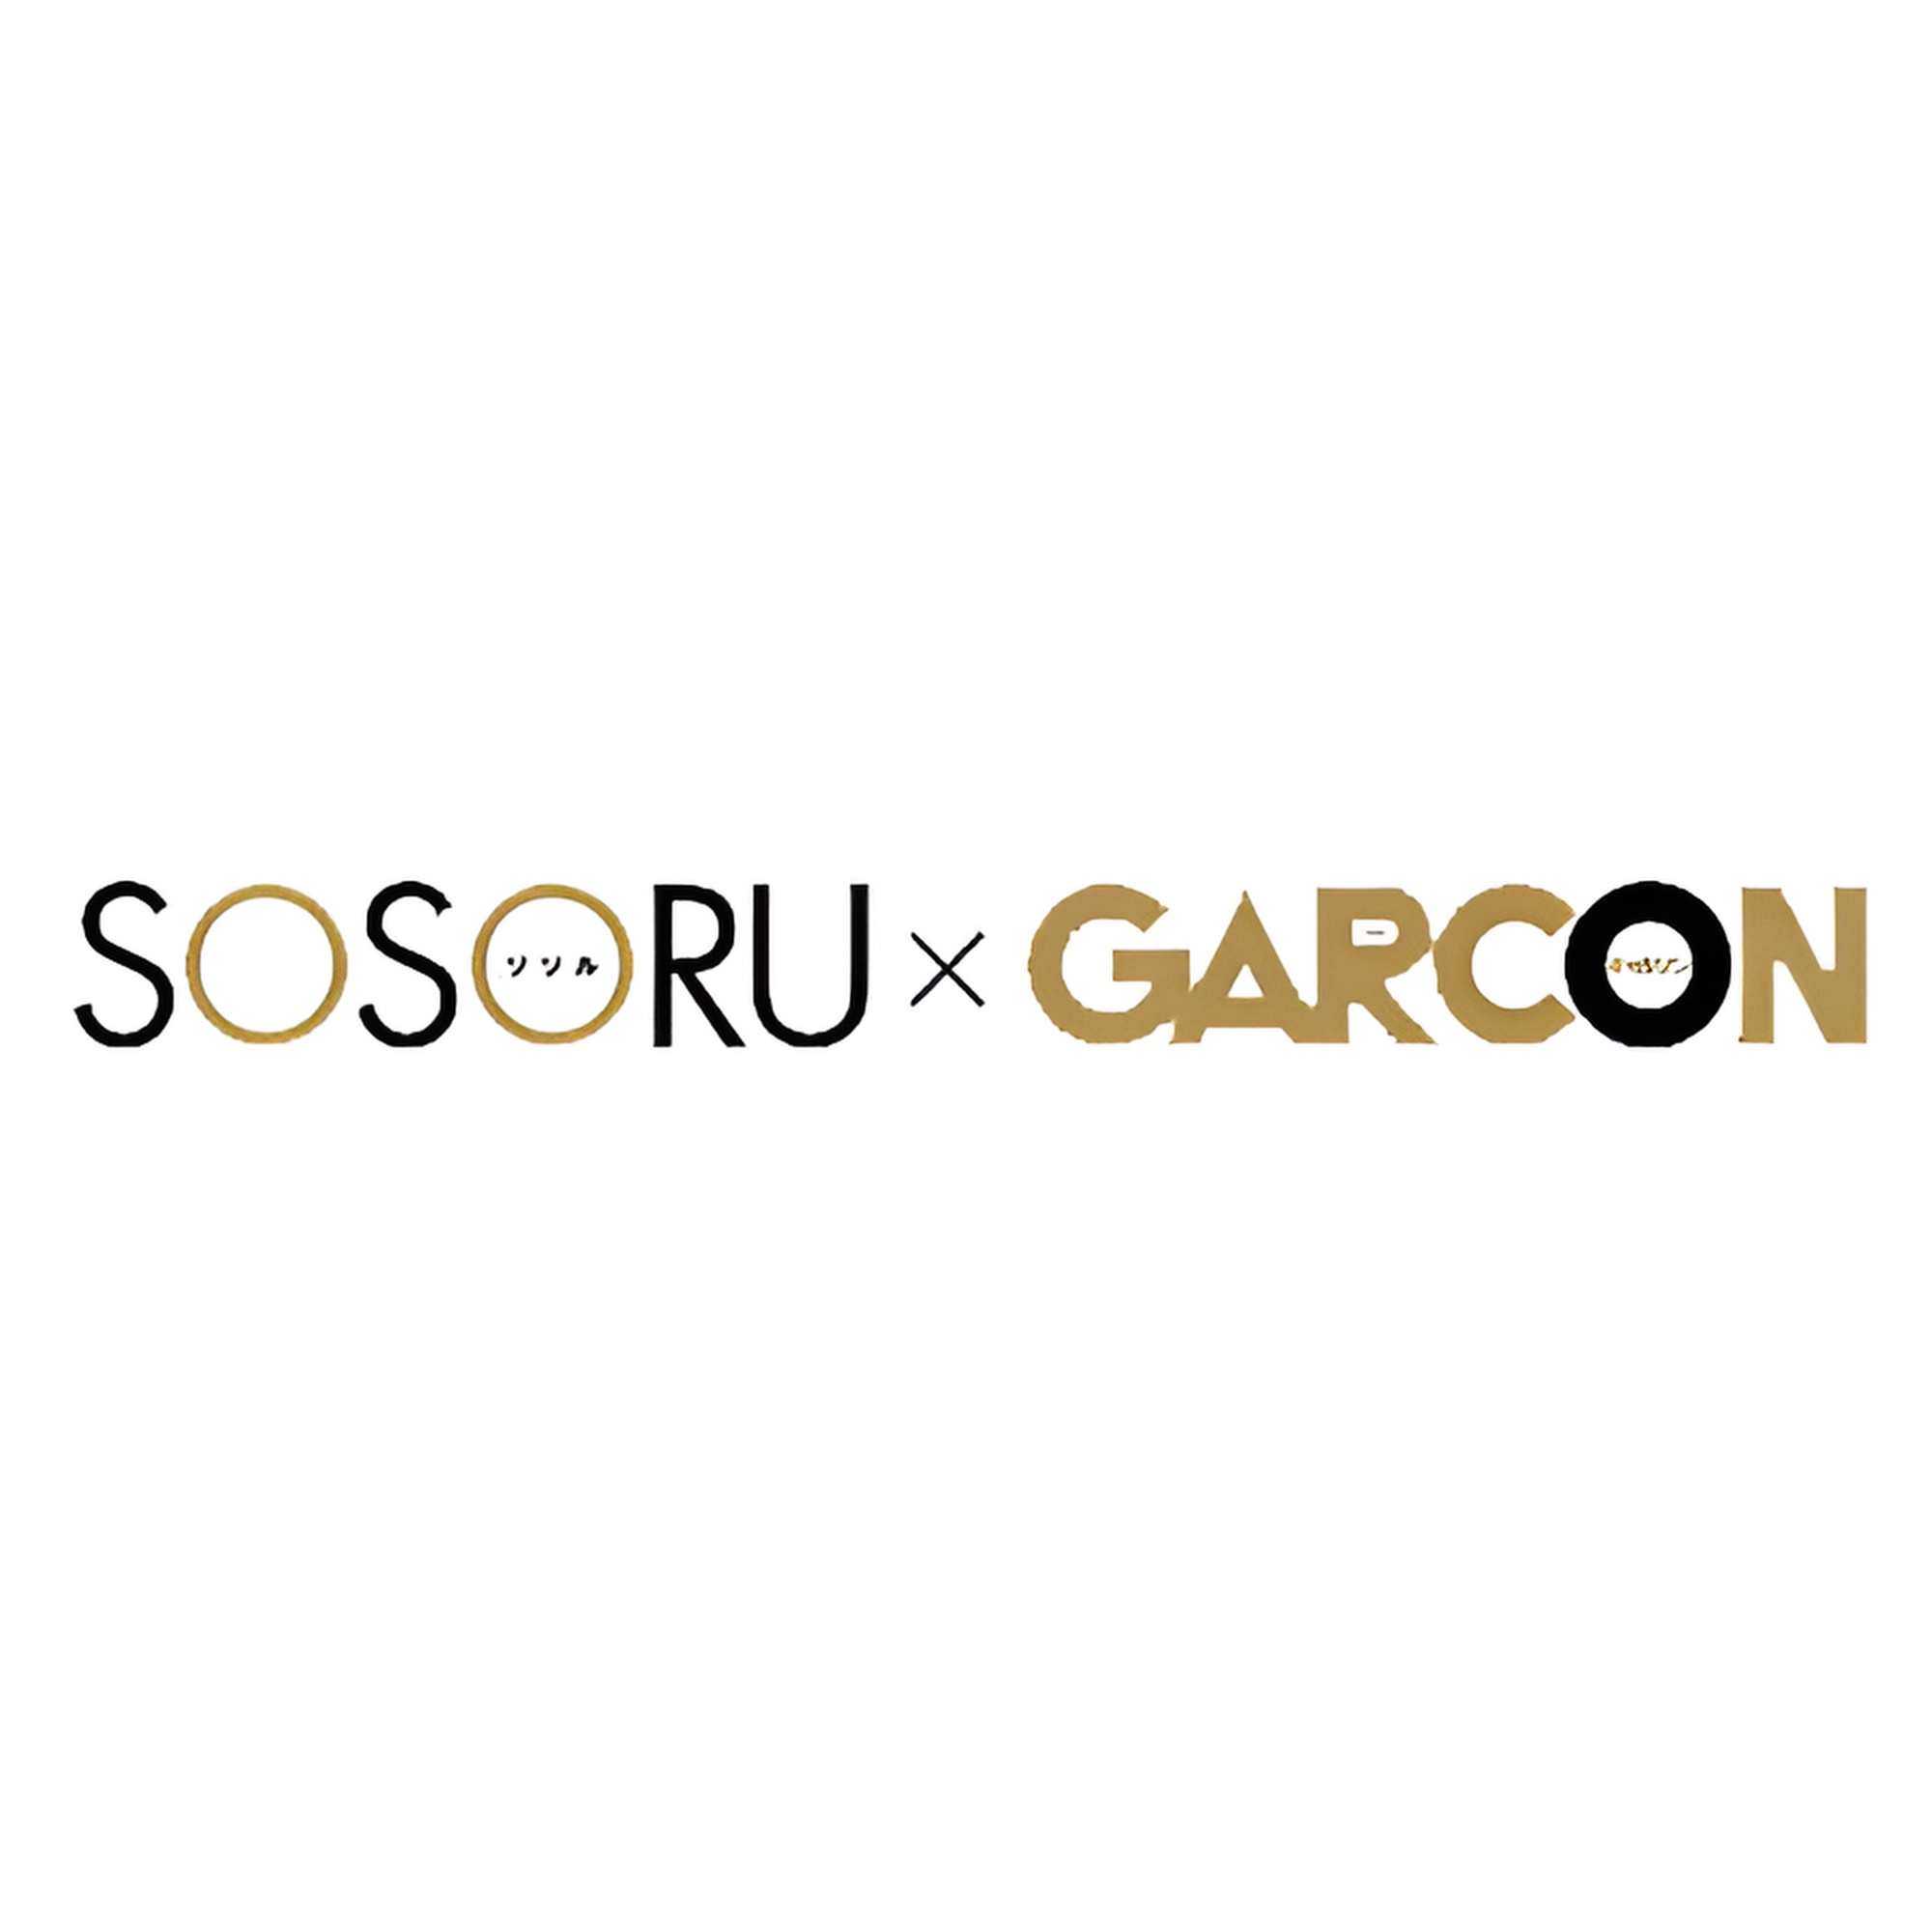 SOSORU X GARCON